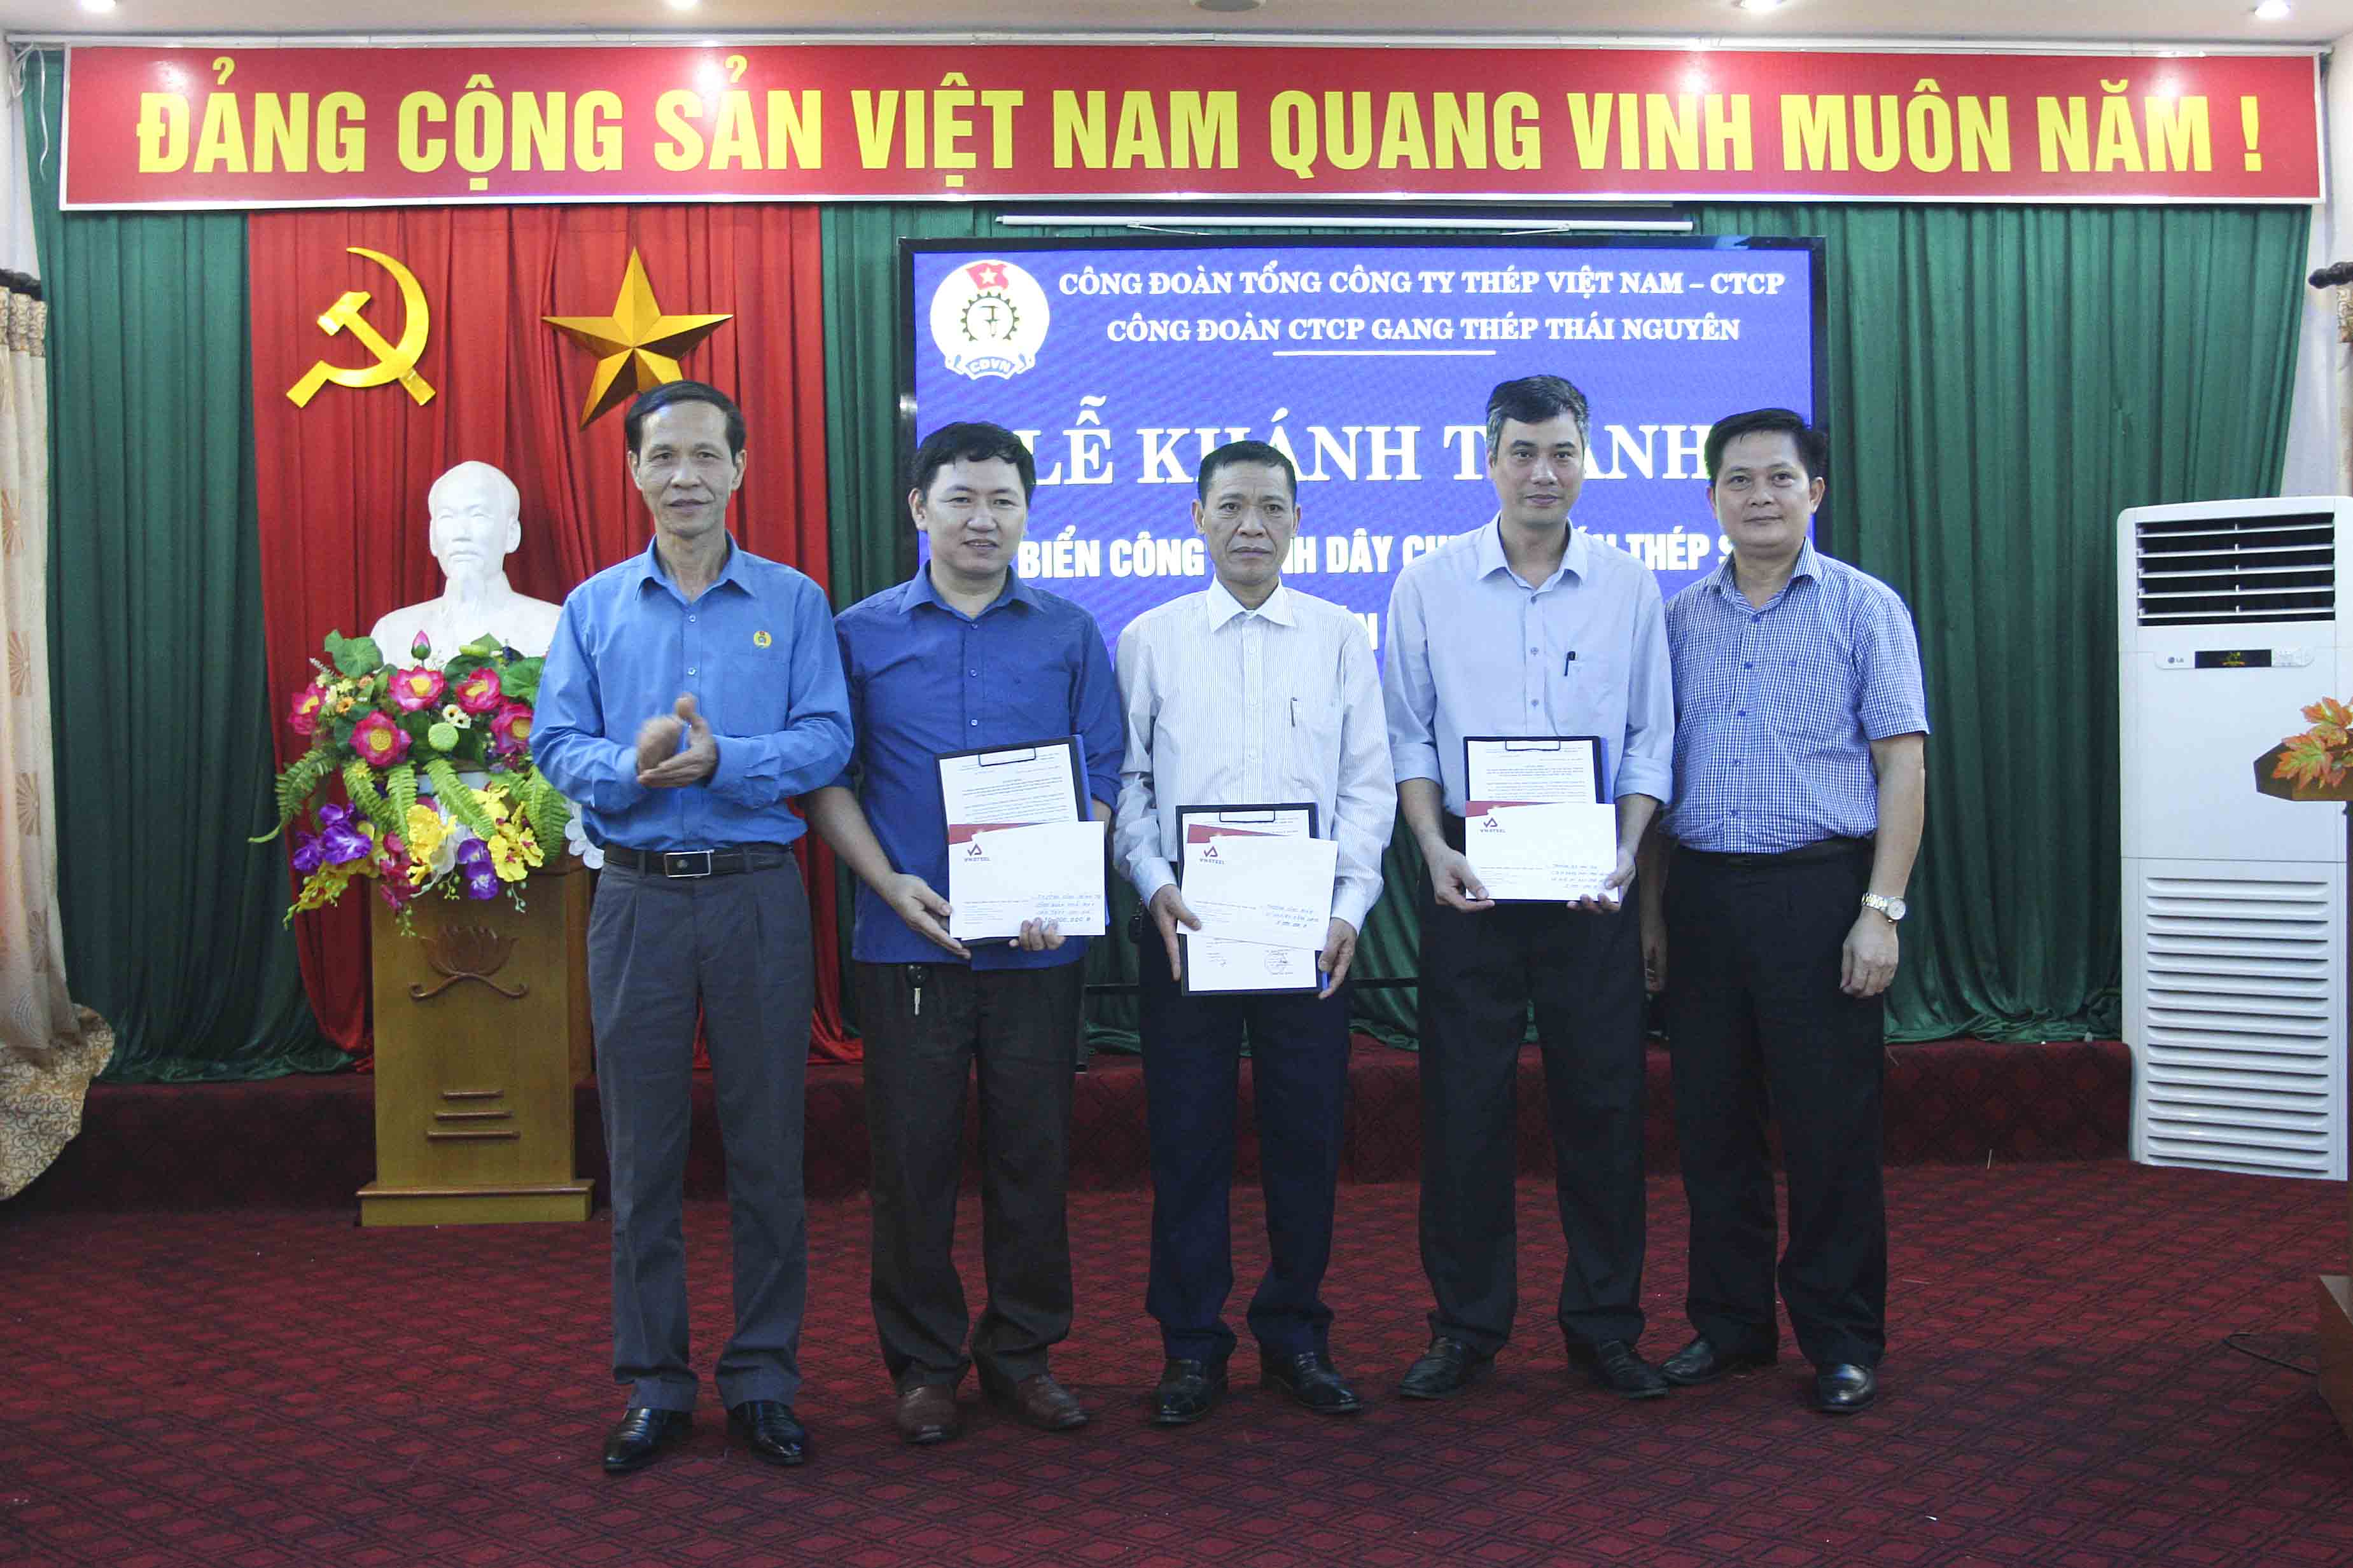 Phó Chủ tịch Công đoàn Công Thương Việt Nam Vũ Trường Sơn và Chủ tịch Công đoàn VNSTEEL Vương Duy Khánh trao phần thưởng cho các cá nhân và tập thể có thành tích trong thi công lắp đặt công trình